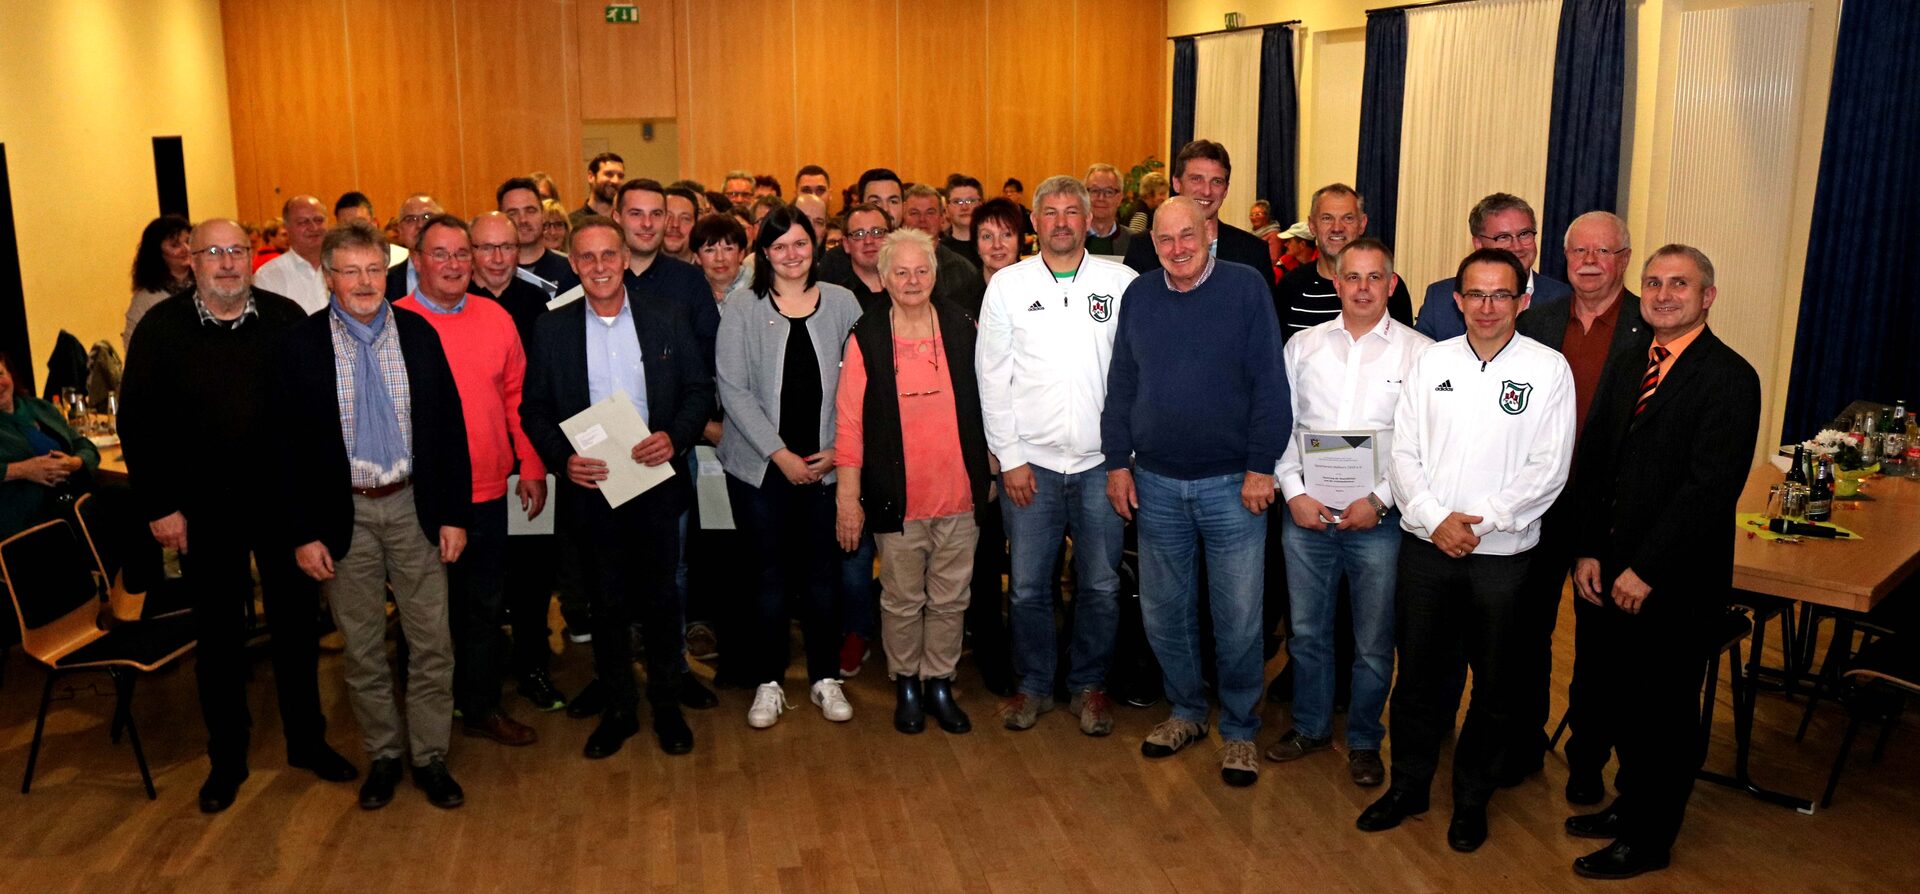 Landrat Uwe Schmidt übergab die Bewilligungsbescheide an die Vertreter der Vereine im Dorfgemeinschaftshaus in Istha.